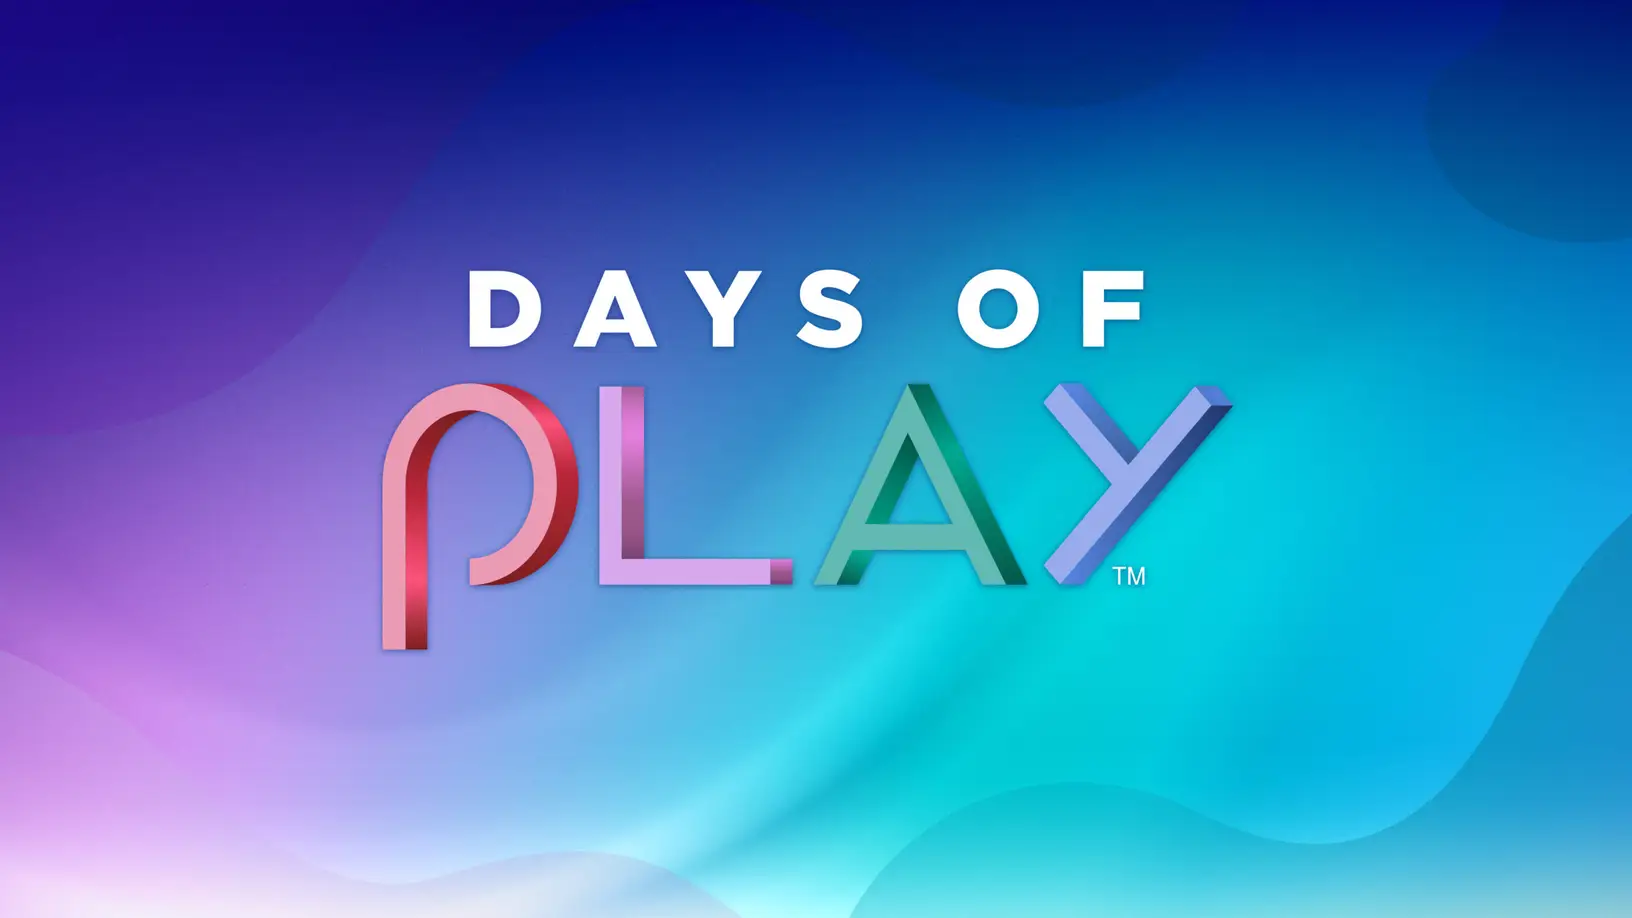 Immagine di Days of Play 2022: tornano le offerte primaverili di PlayStation!